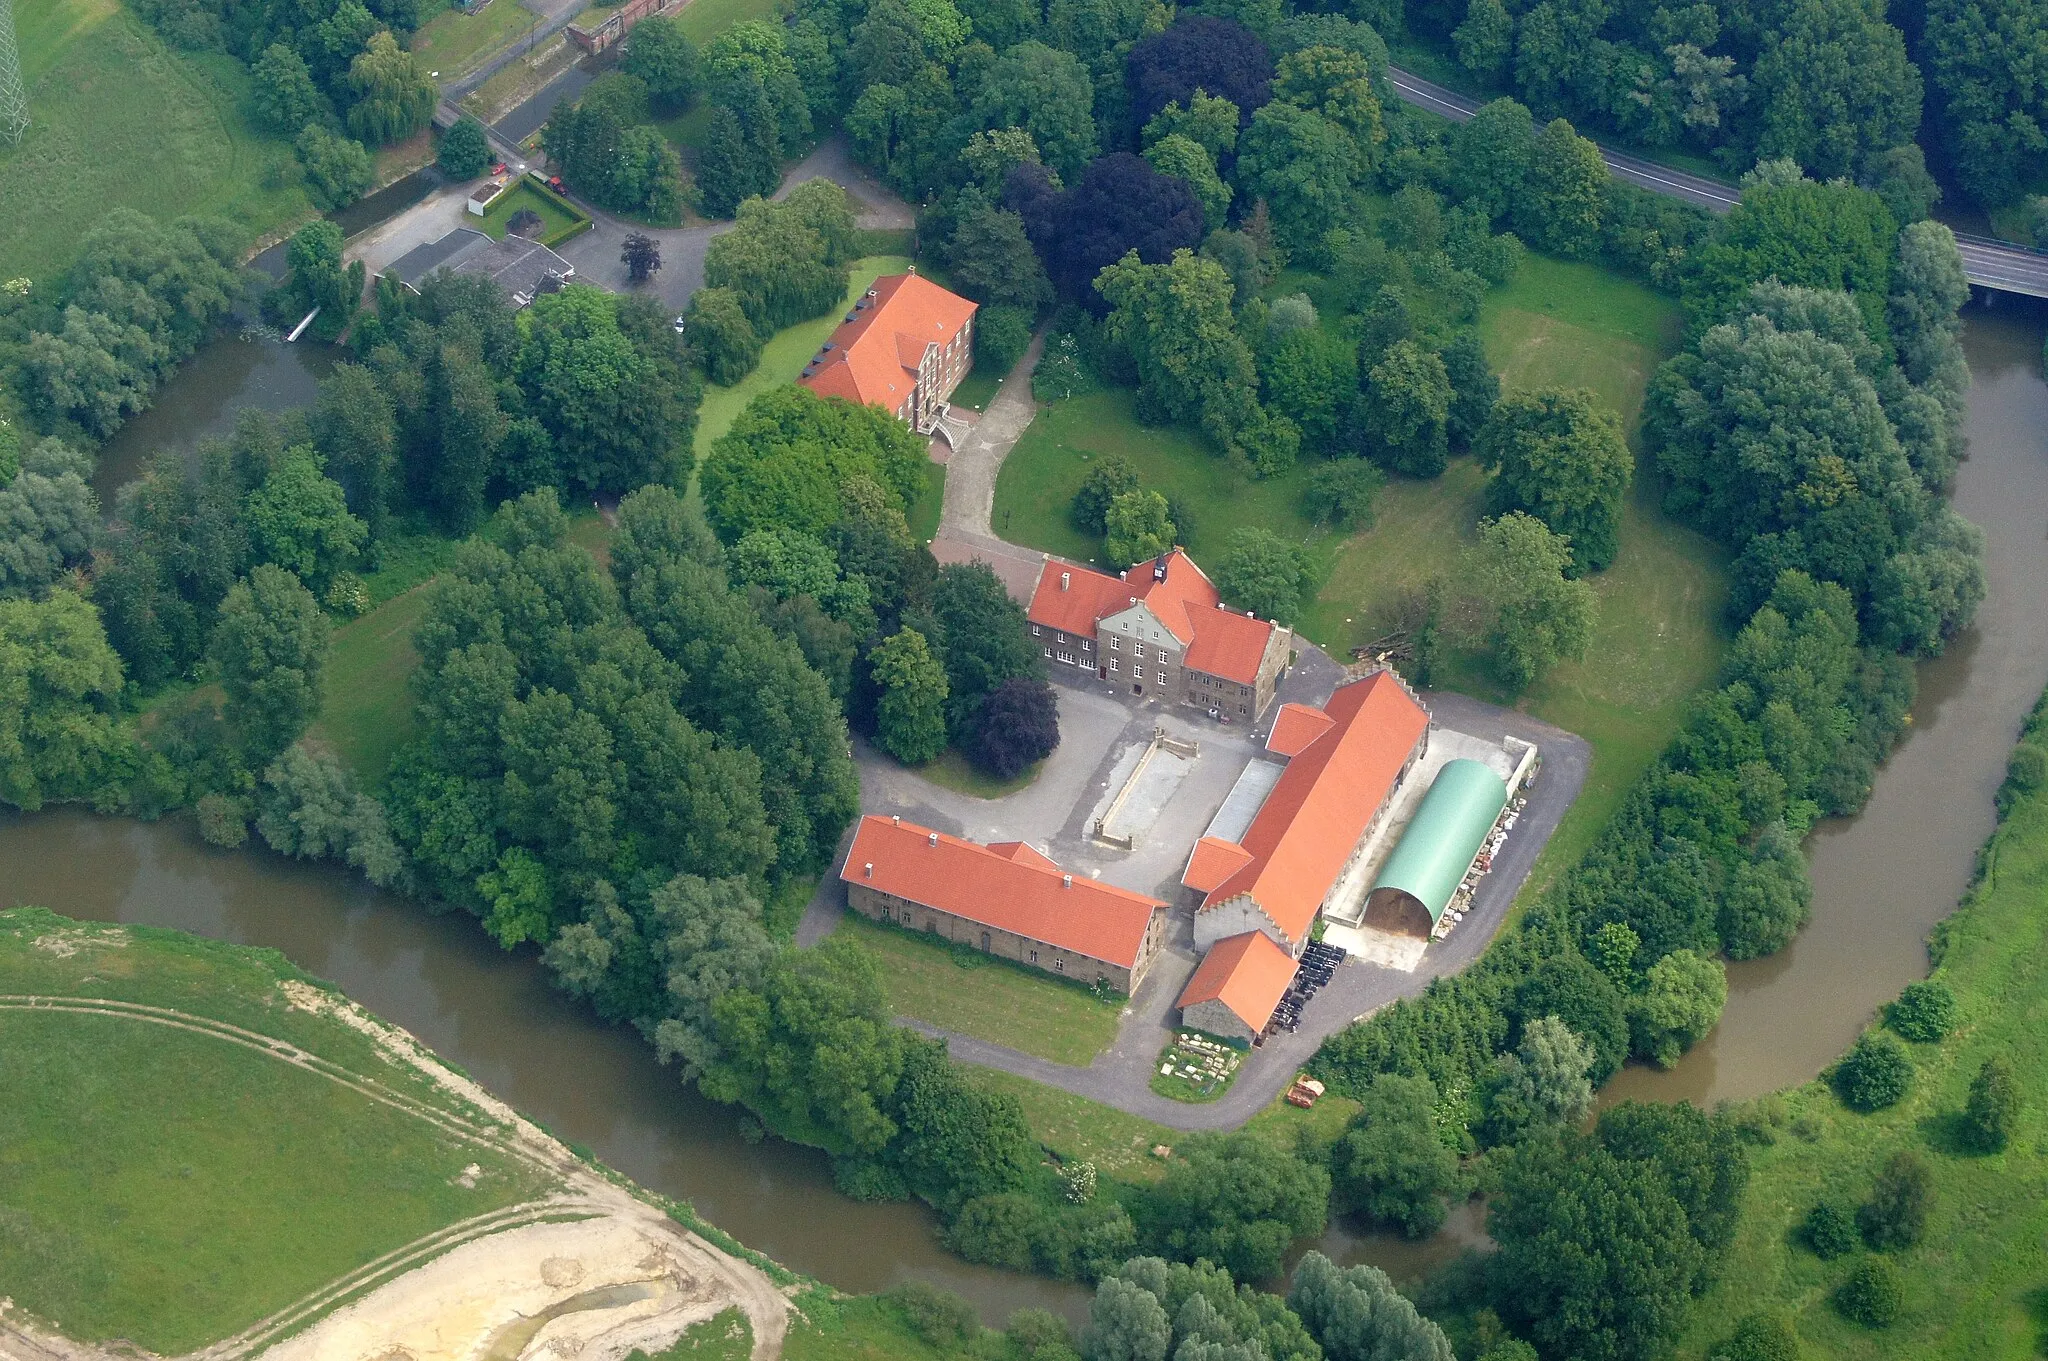 Photo showing: Haus Uentrop ist ein 1720 erbautes Wasserschloss in Uentrop, Hamm, Nordrhein-Westfalen, Deutschland.
Das Bild entstand während des Münsterland-Fotoflugs am 1. Juni 2014.
Hinweis: Die Aufnahme wurde aus dem Flugzeug durch eine Glasscheibe hindurch fotografiert.